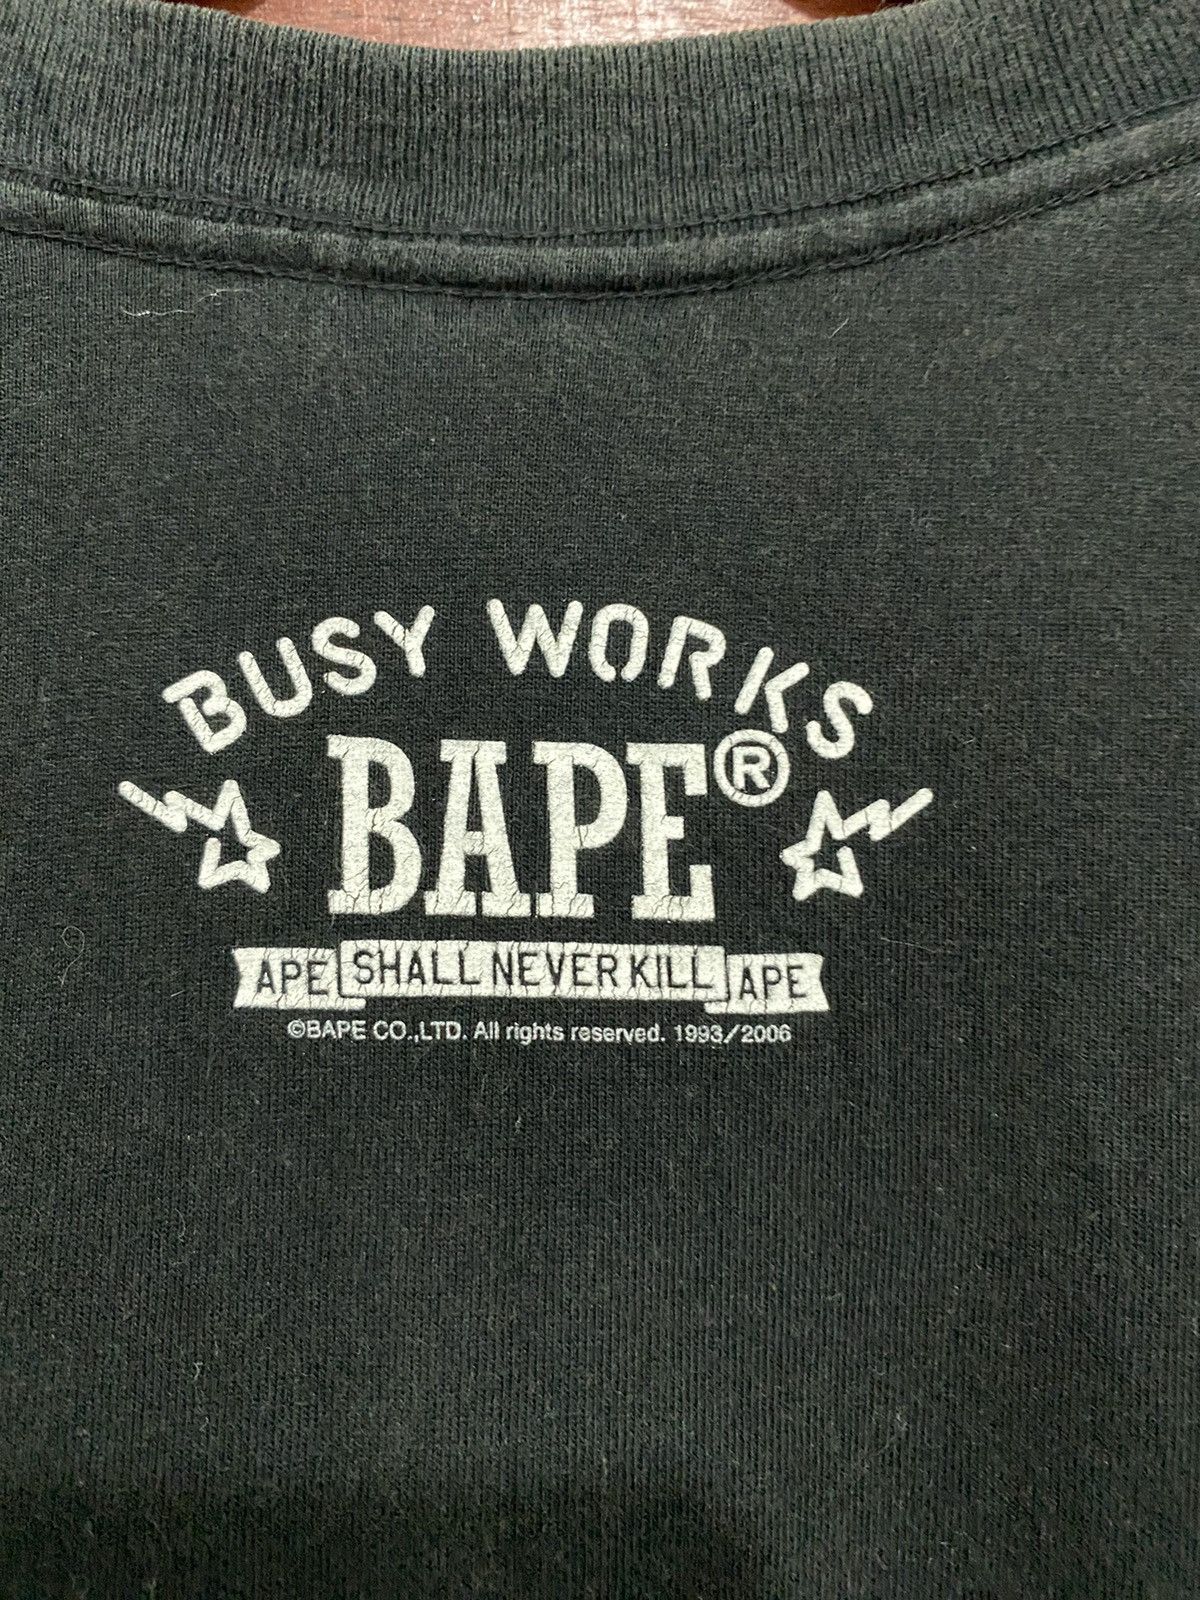 🔥 Bape X Jacob & Co Rare Collaboration T-shirt 2006 - 7